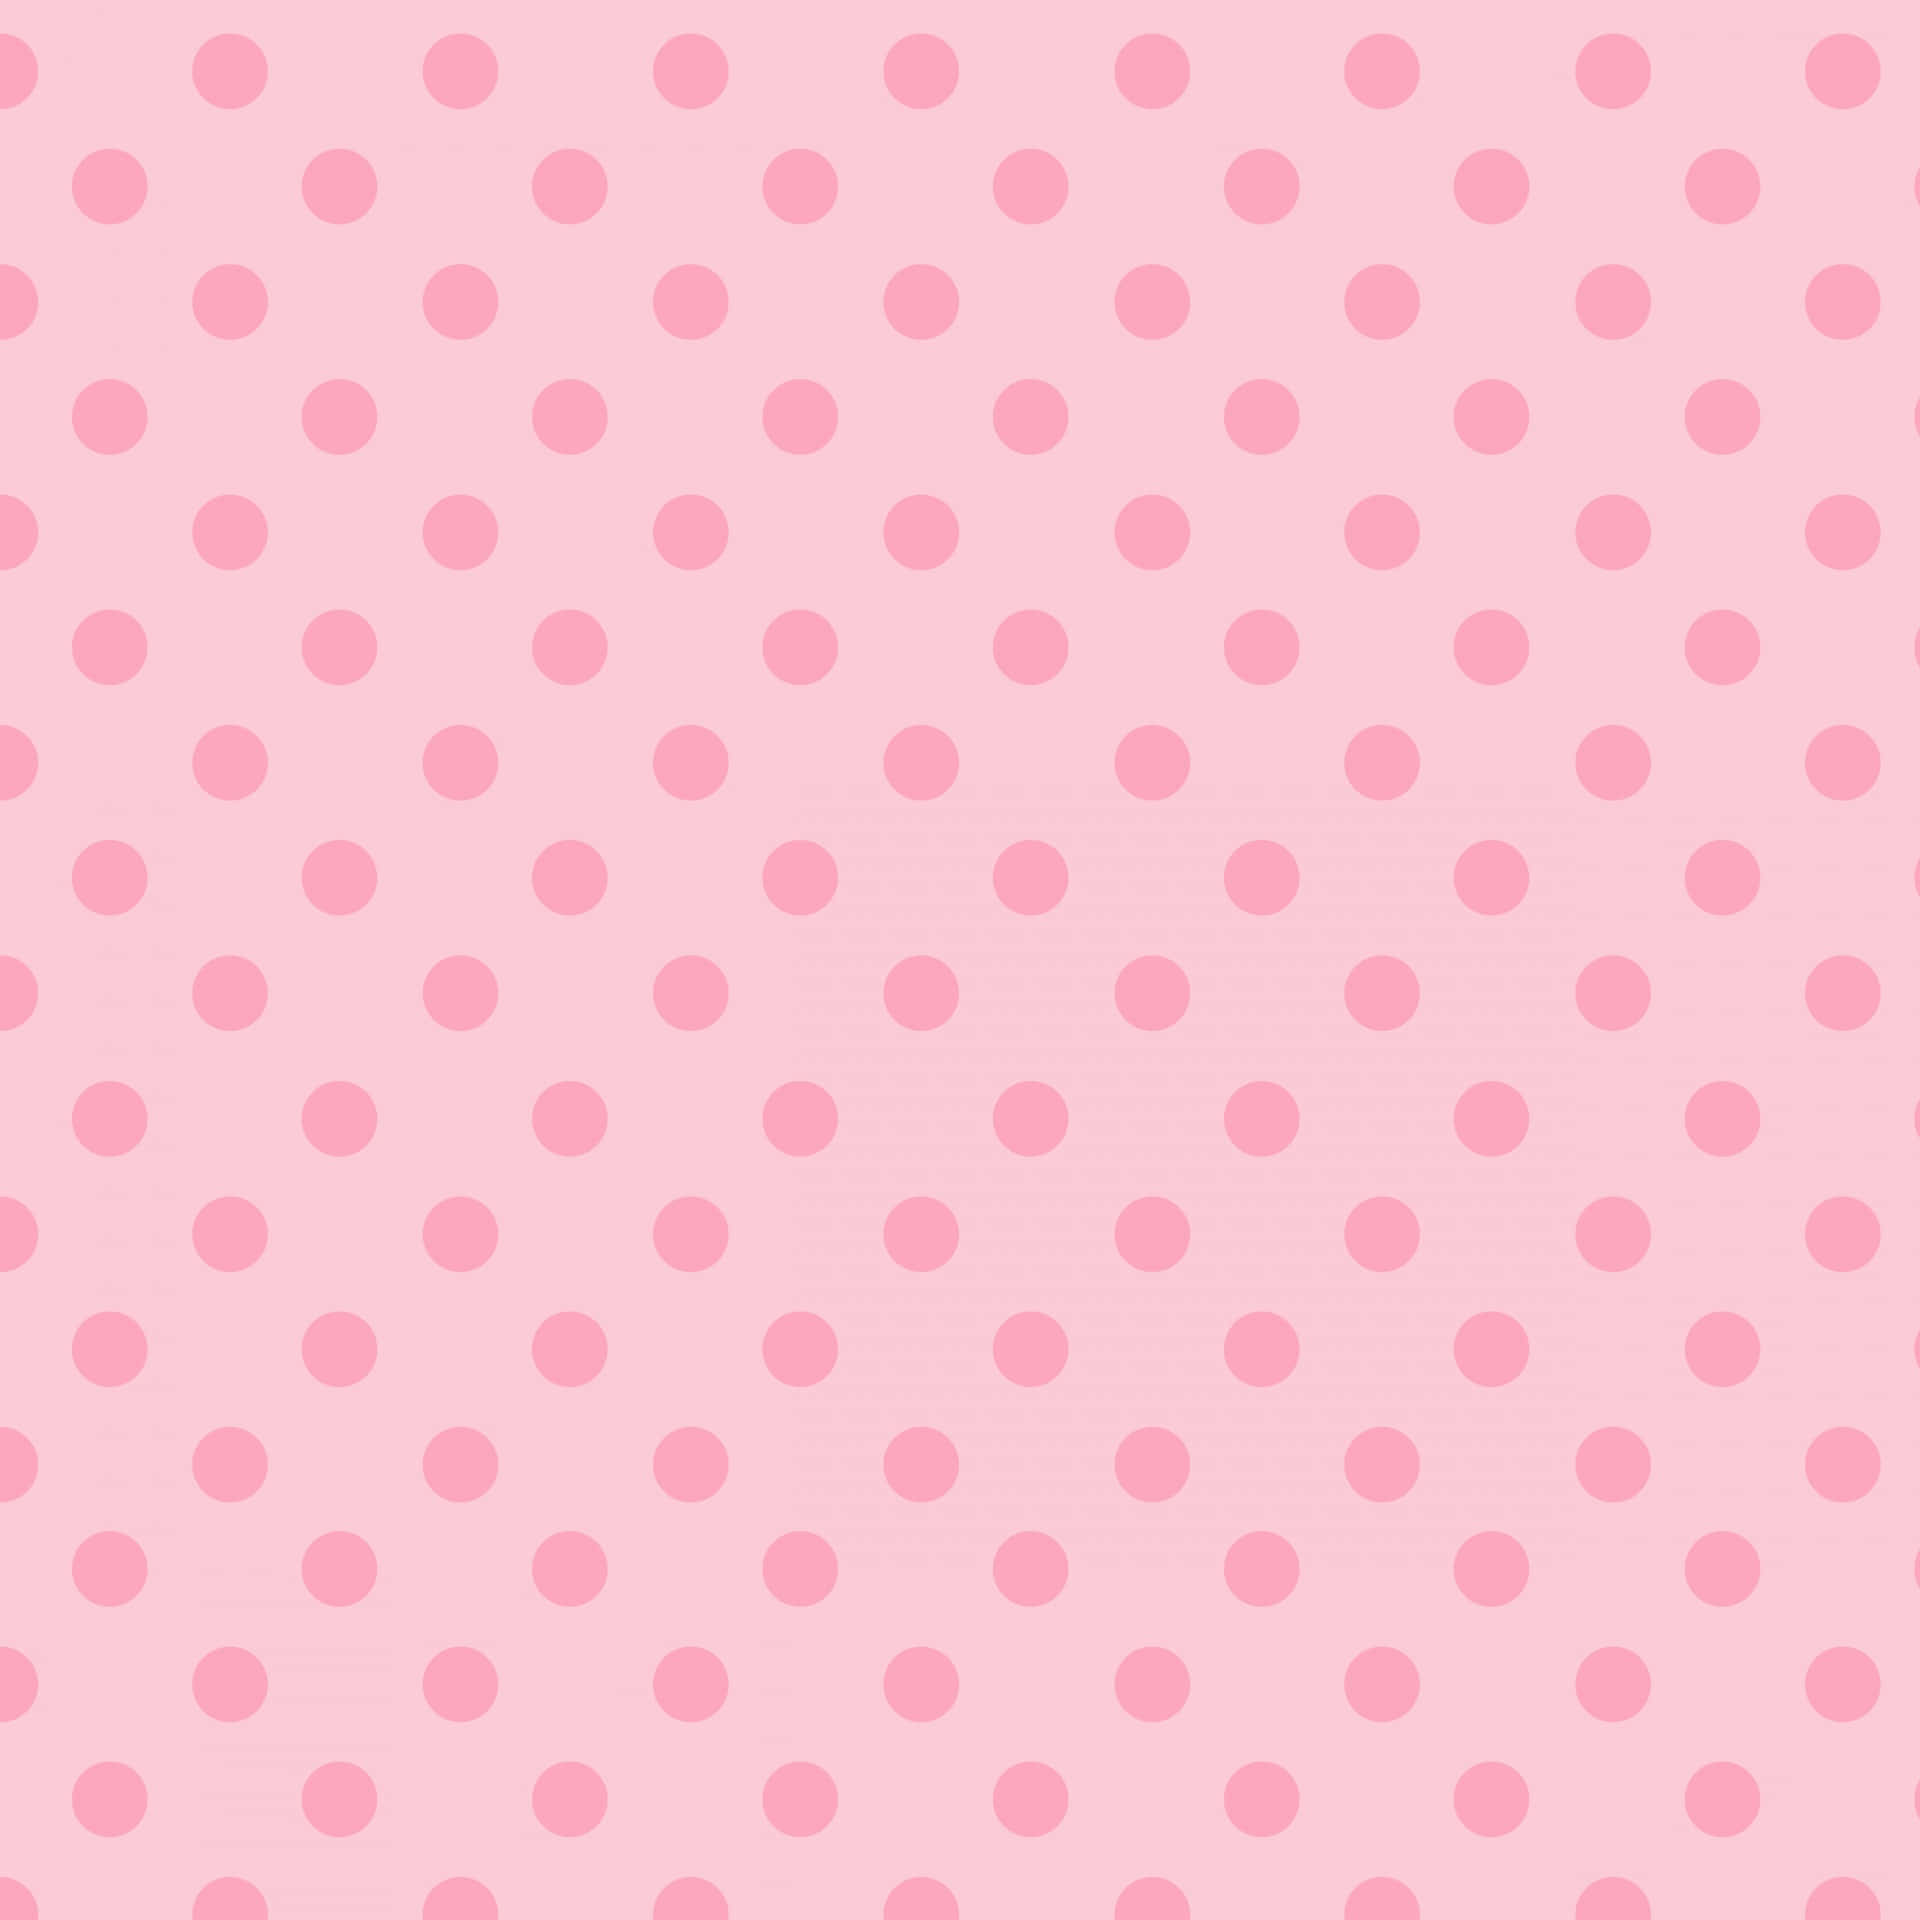 Enbakgrund Av Klassisk Rosa Och Vita Polka Dot-mönster. Wallpaper